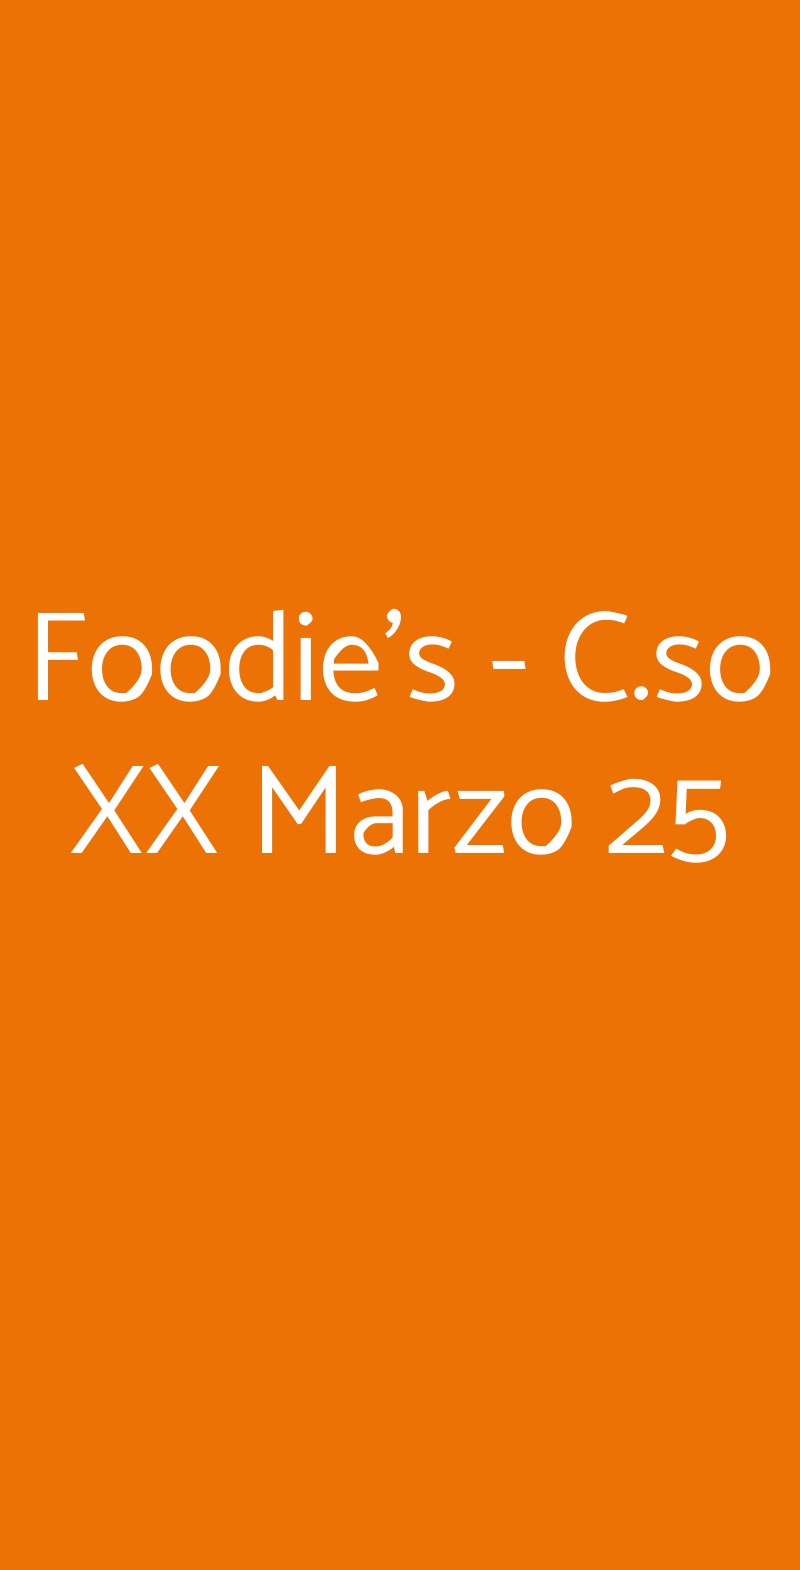 Foodie's - C.so XX Marzo 25 Milano menù 1 pagina